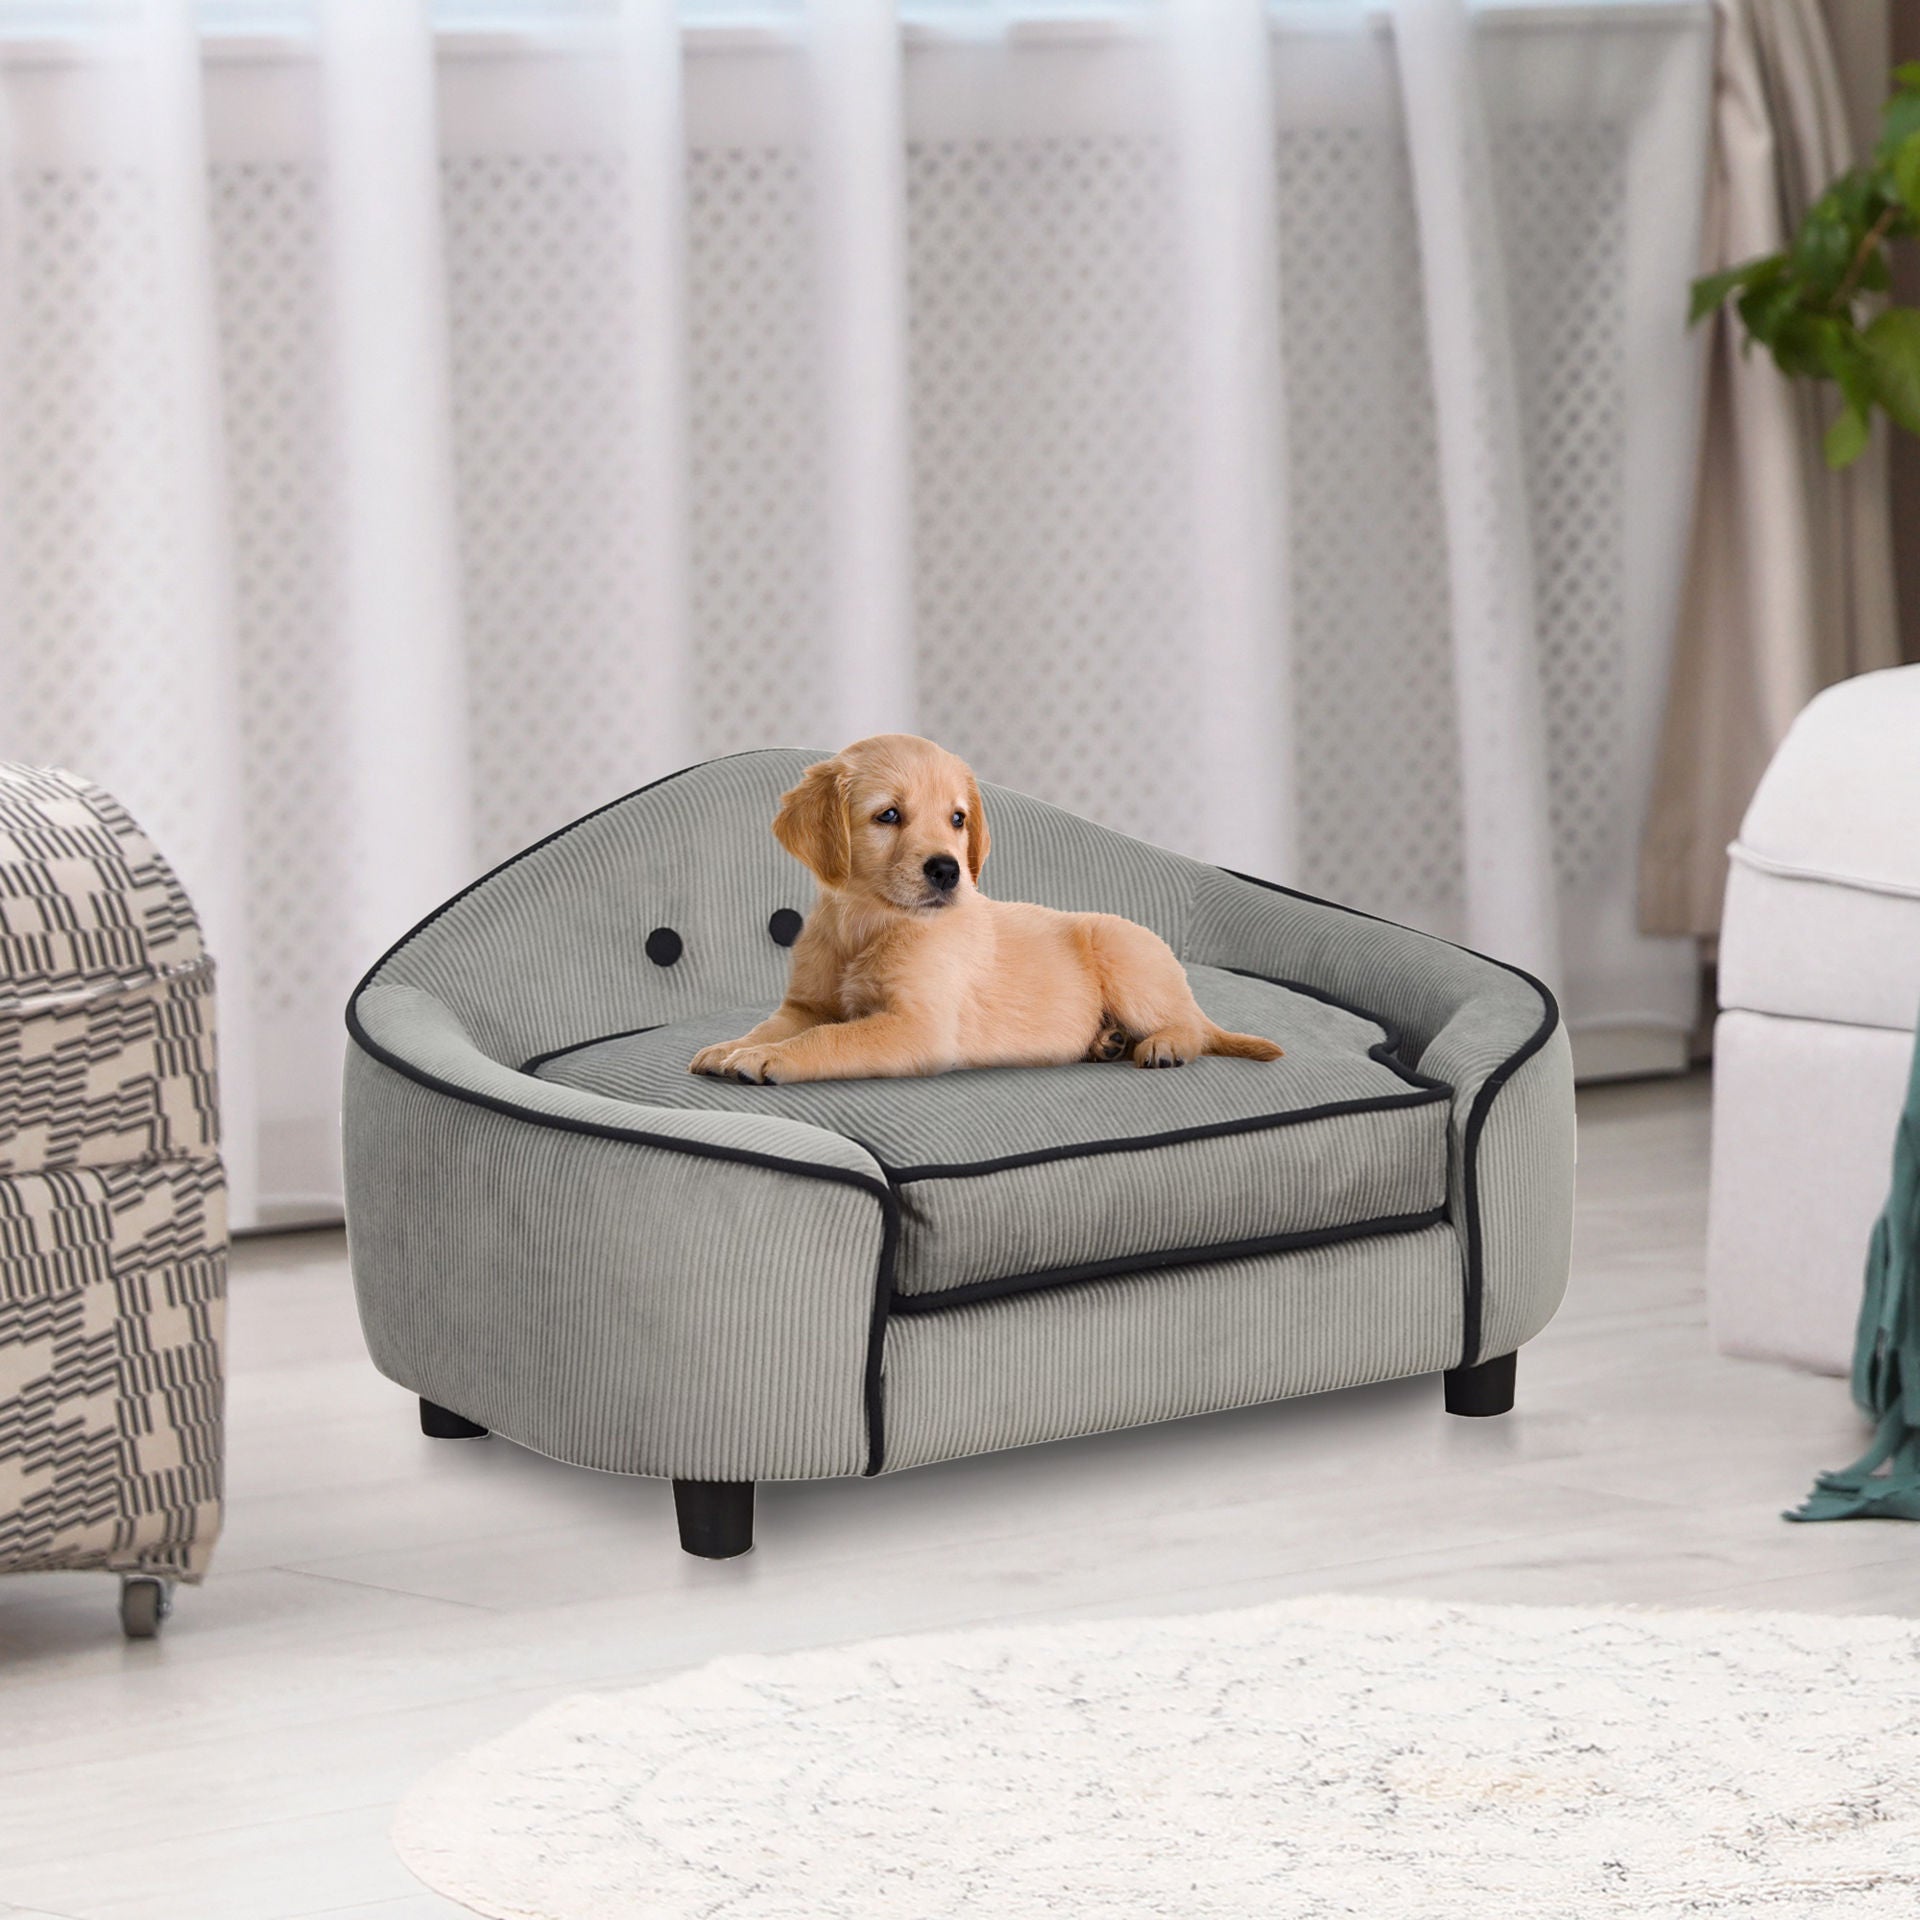 Canapé Alloa Dog de Nancy, lit pour chien, tapis pour chien, canapé pour chien, bois naturel + coussin